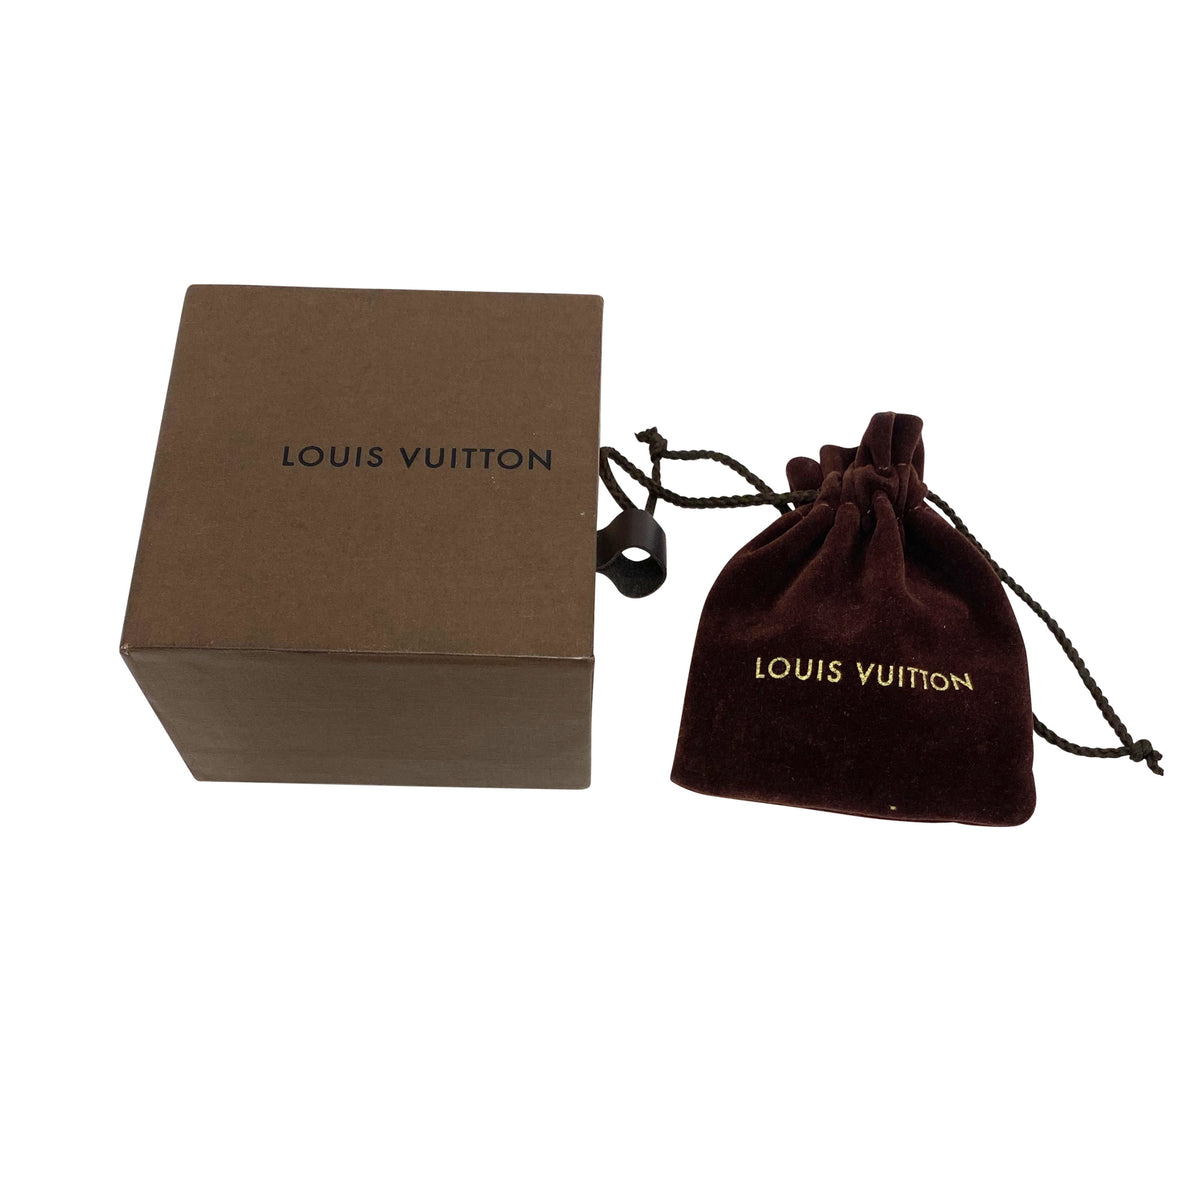 Louis Vuitton, Accessories, Louis Vuitton Belt Box And Dust Bag Mint  Condition Size Details In Pictures